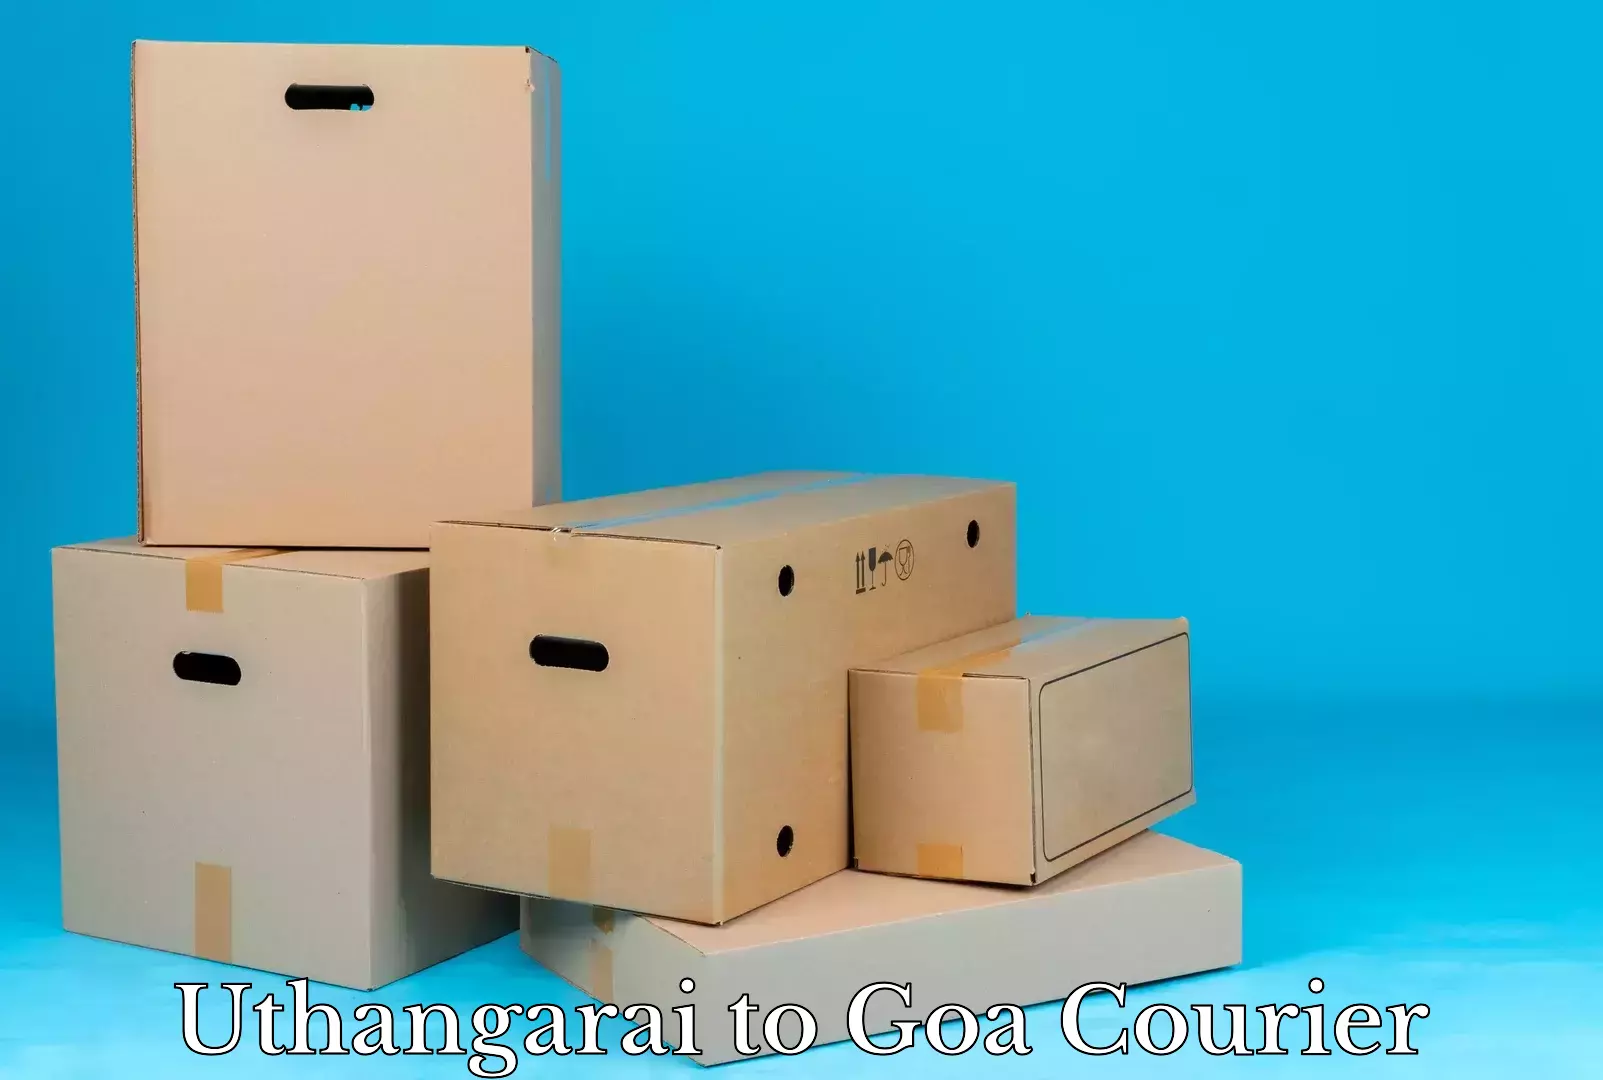 Furniture moving experts Uthangarai to Goa